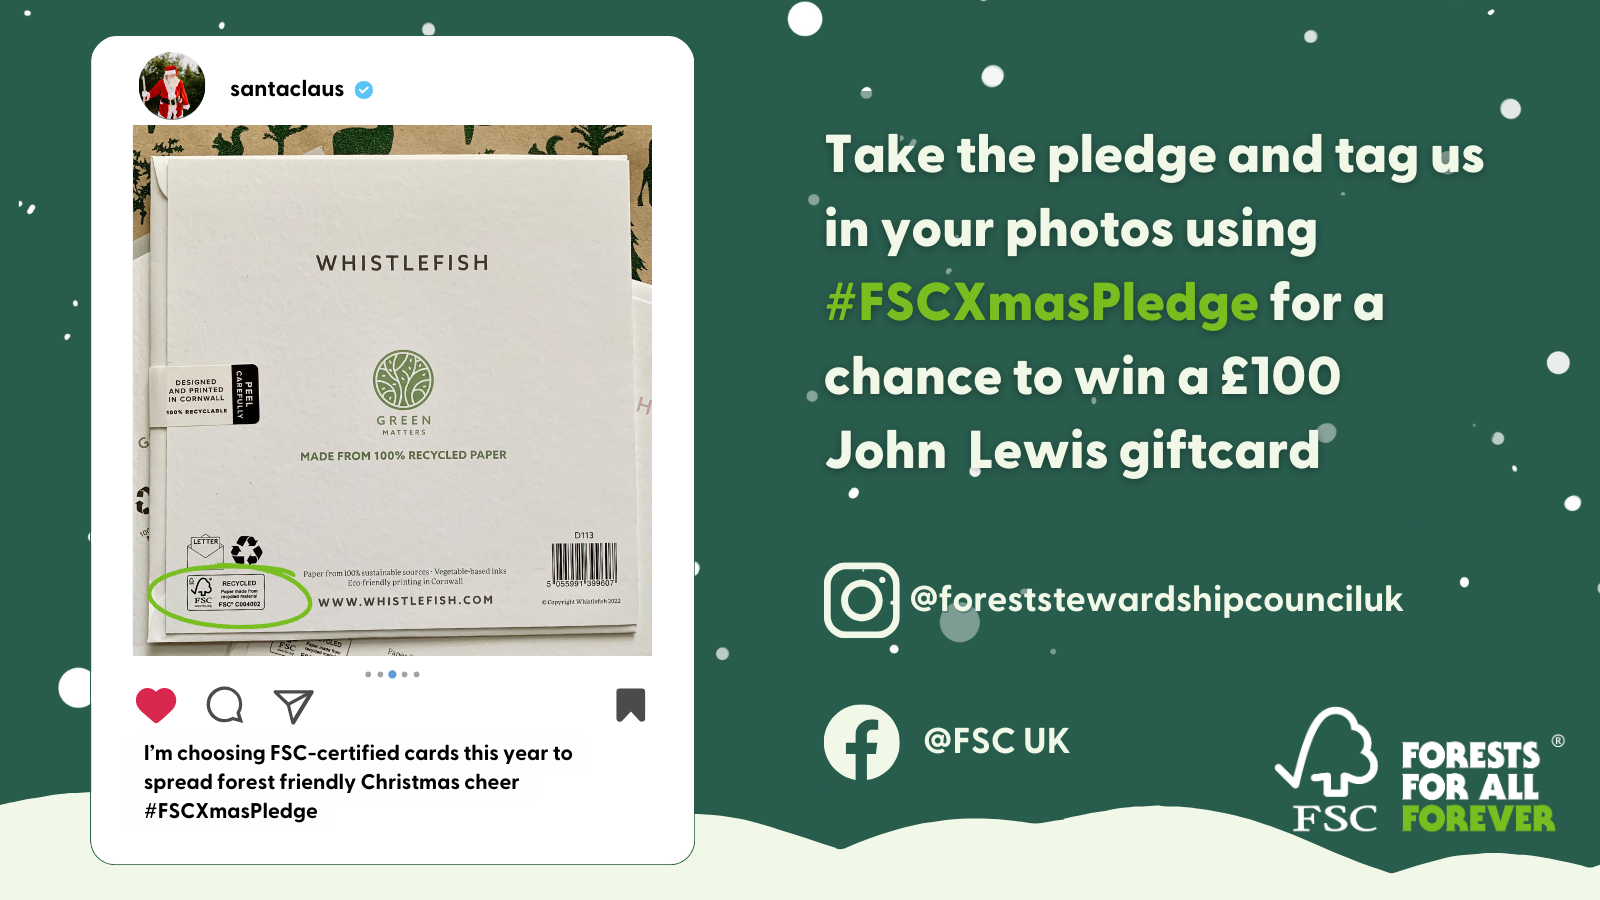 FSC Xmas Pledge steps